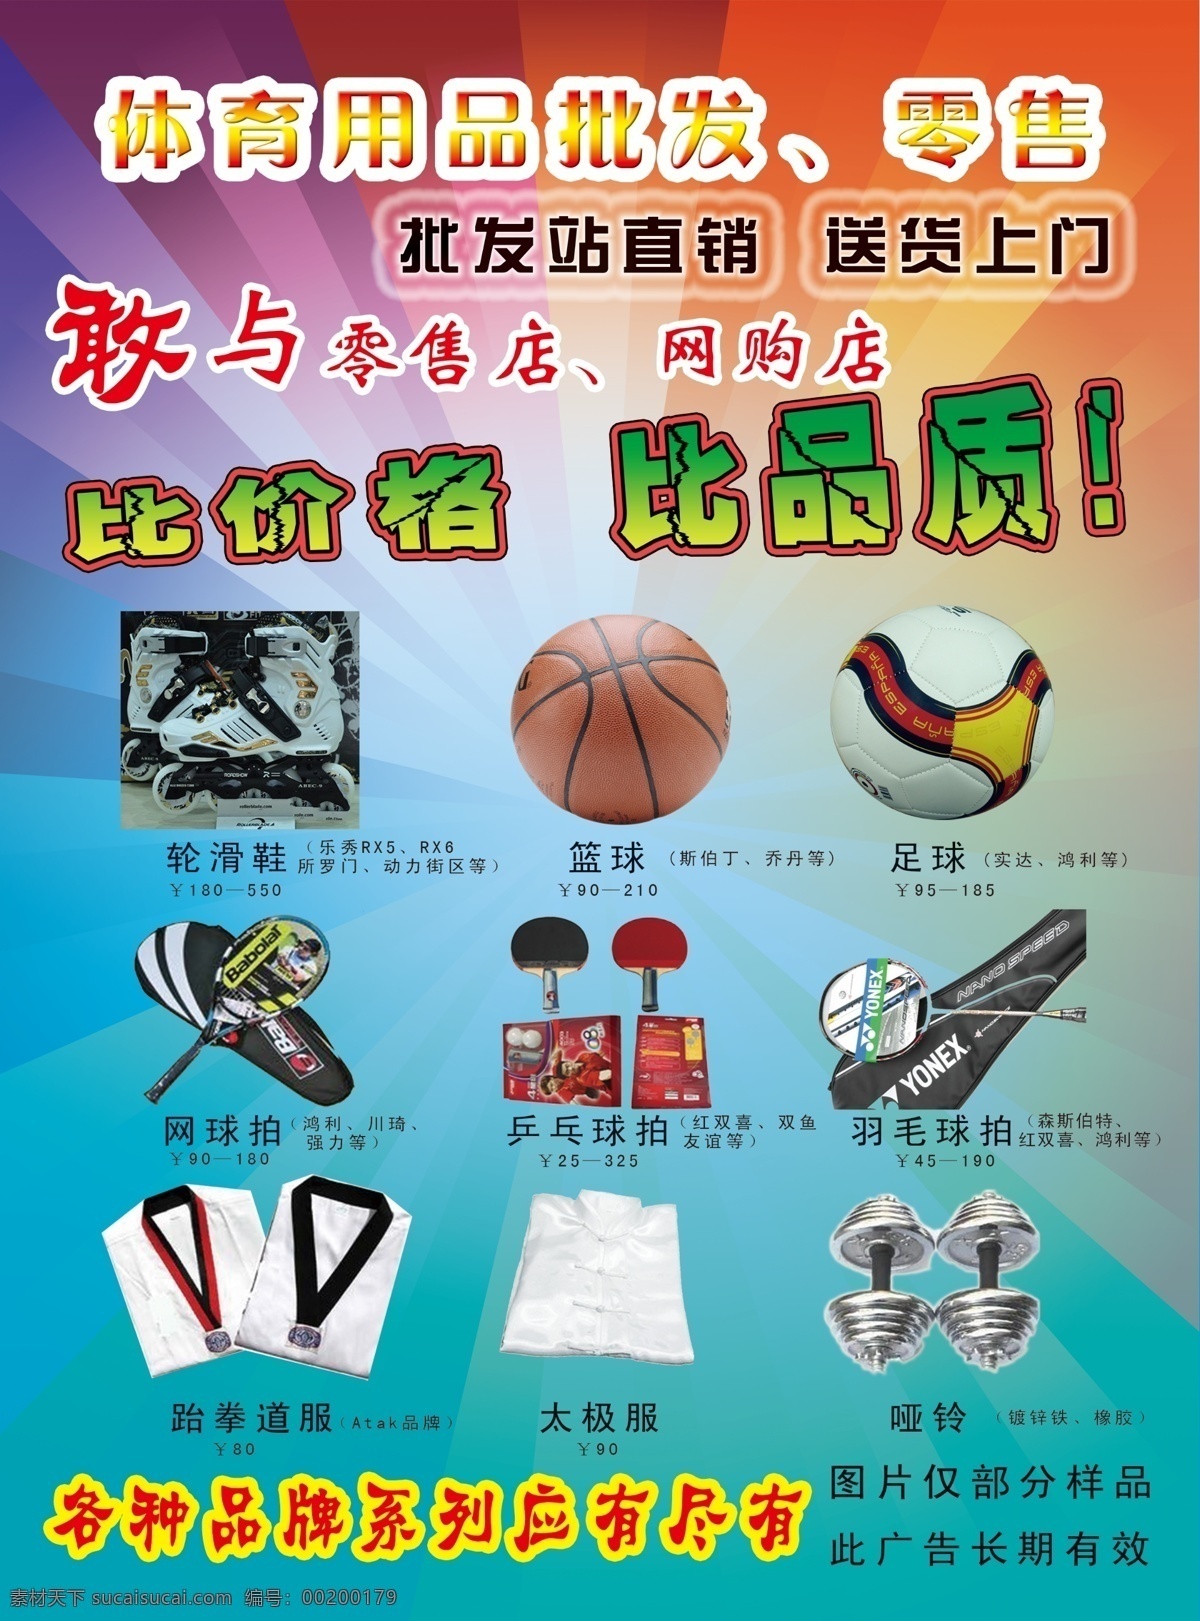 体育用品彩页 体育用品 篮球 足球 排球 dm宣传单 广告设计模板 源文件